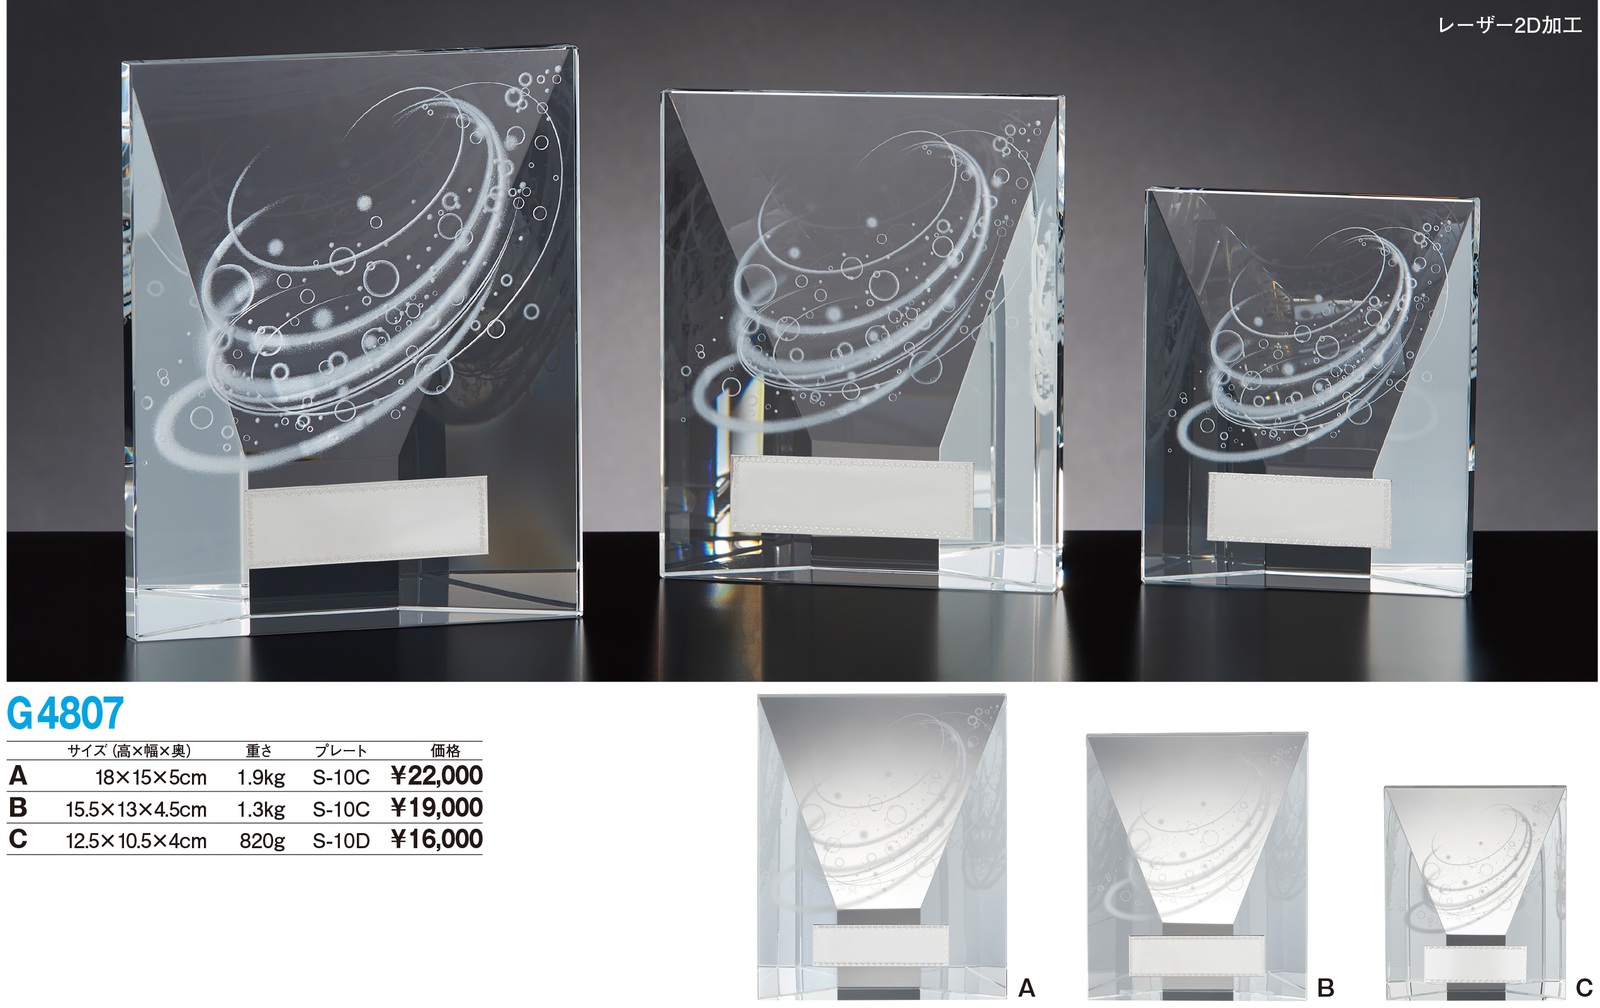 超人気 専門店 トロフィー工房のトロフィーは リボン無料 ランキング上位のプレゼント 高品質レーザー印字無料 10000円以上お買い上げで送料無料 S-10C グランツクリスタル G4807A